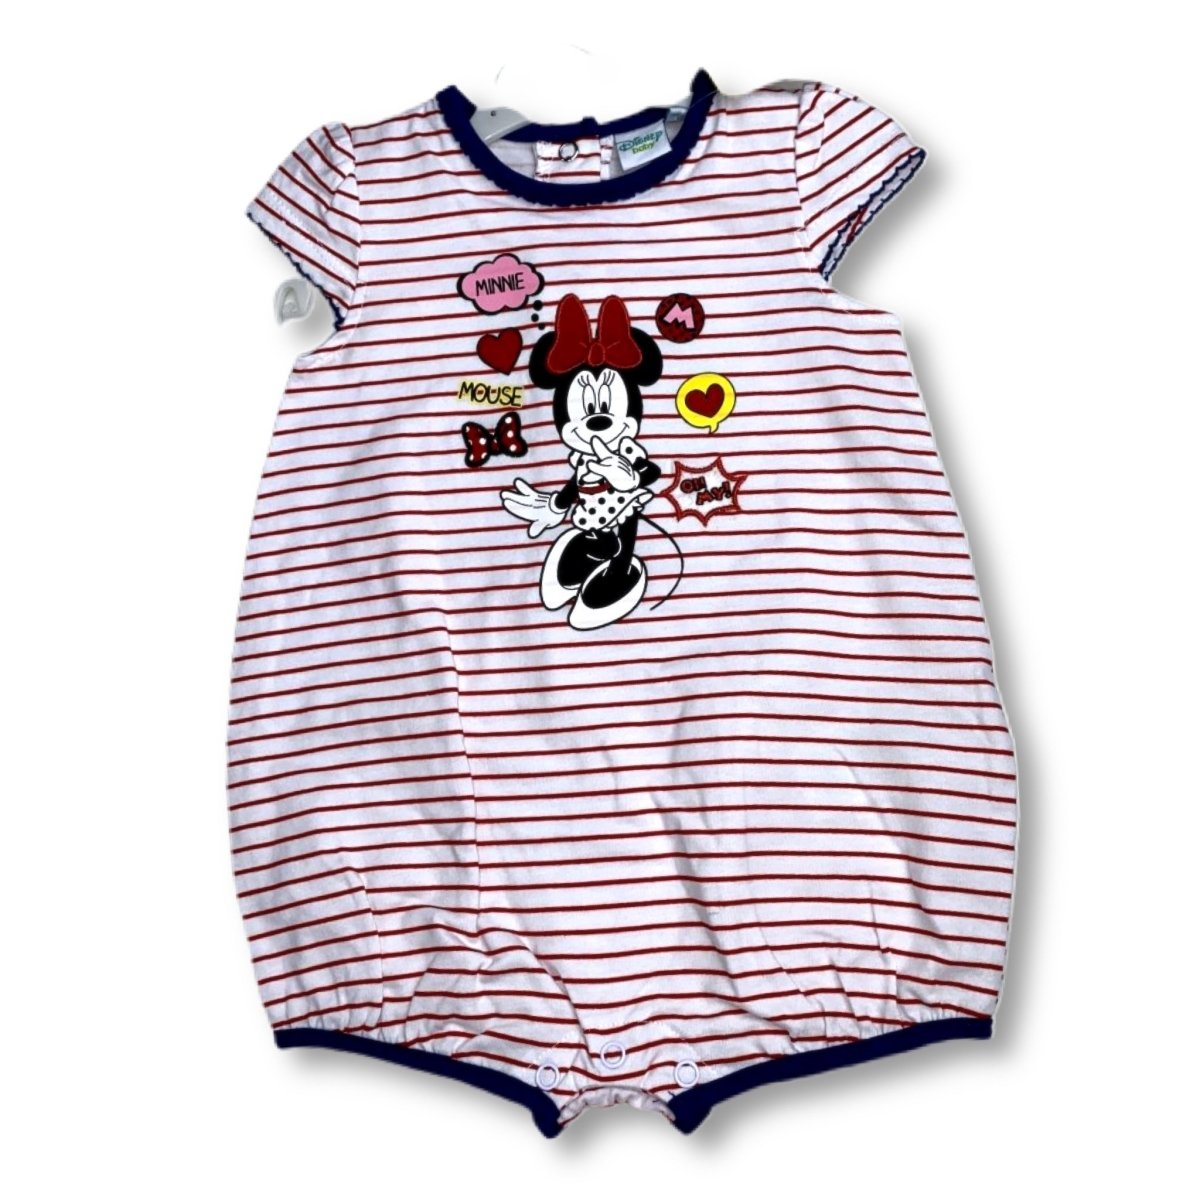 Pagliaccetto Disney Minnie 6/24 mesi - Mstore016 - Pagliaccetto disney Minnie 6/24 mesi - Disney